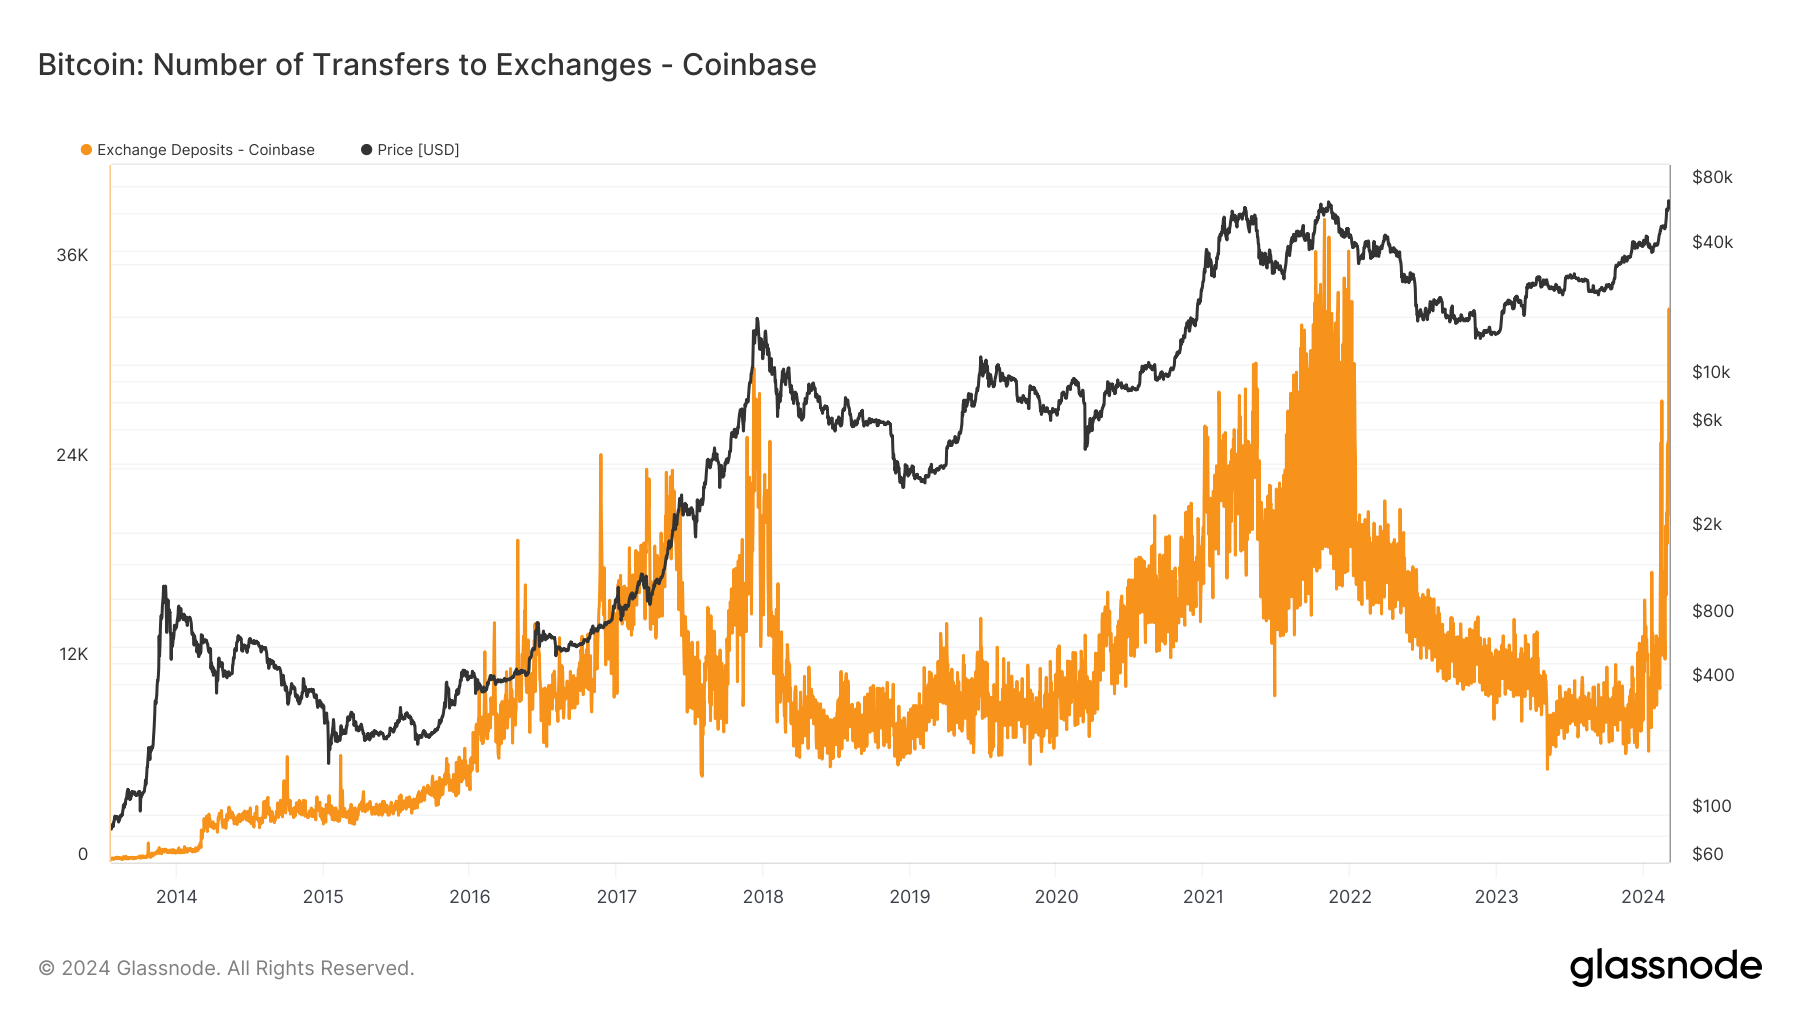 Sức hút từ phần lớn người mua Bitcoin trở lại đẩy lượng giao dịch spot lên mức cao nhất trong 12 tháng